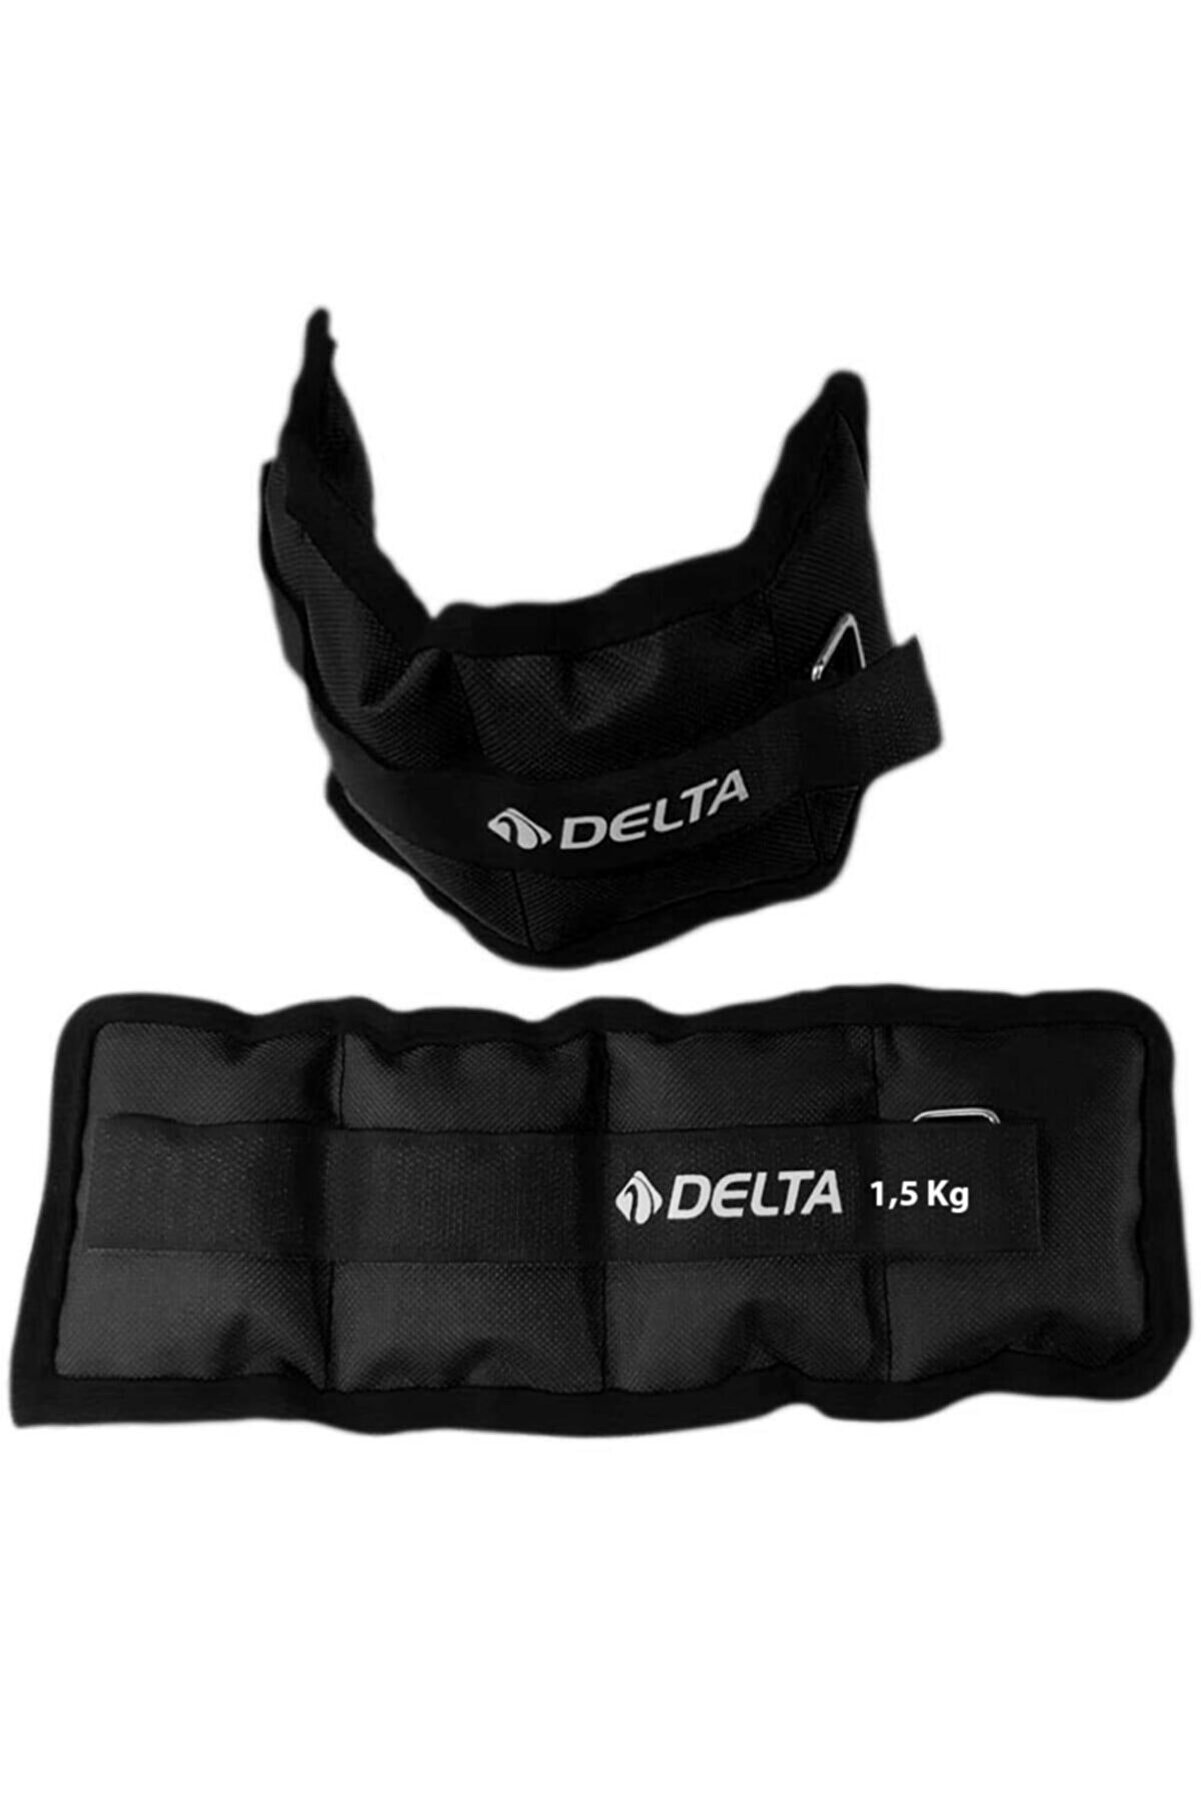 Delta 1,5 Kg X 2 Adet El Ayak Bilek Kas Güçlendirici Ağırlık Seti